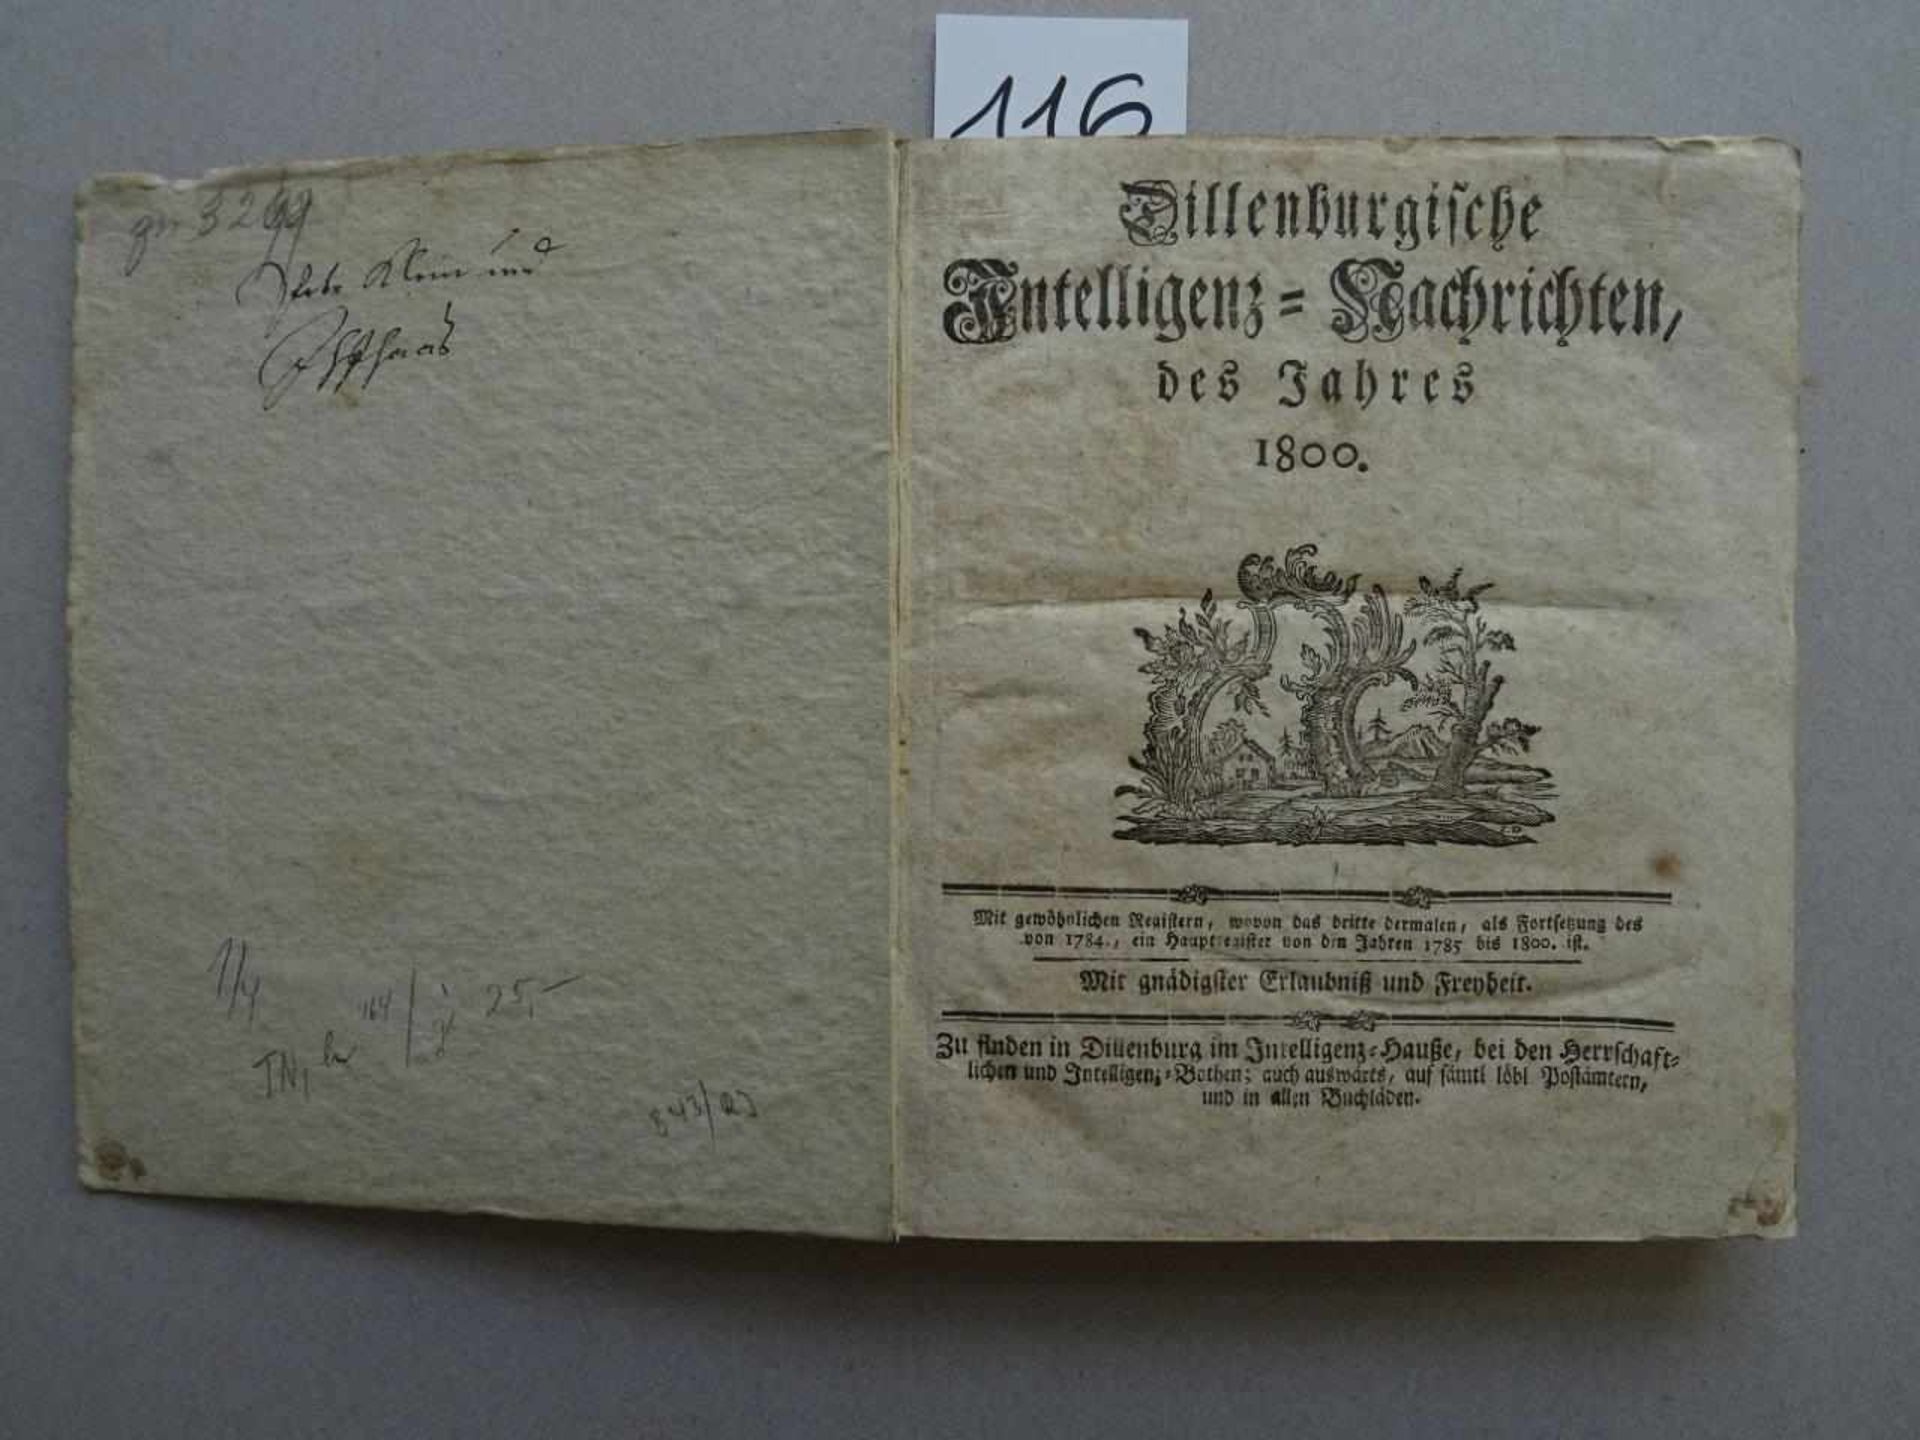 Zeitungen.- DillenburgischeIntelligenz-Nachrichten, des Jahres 1800. I.-LII. Stück in 1 Bd.